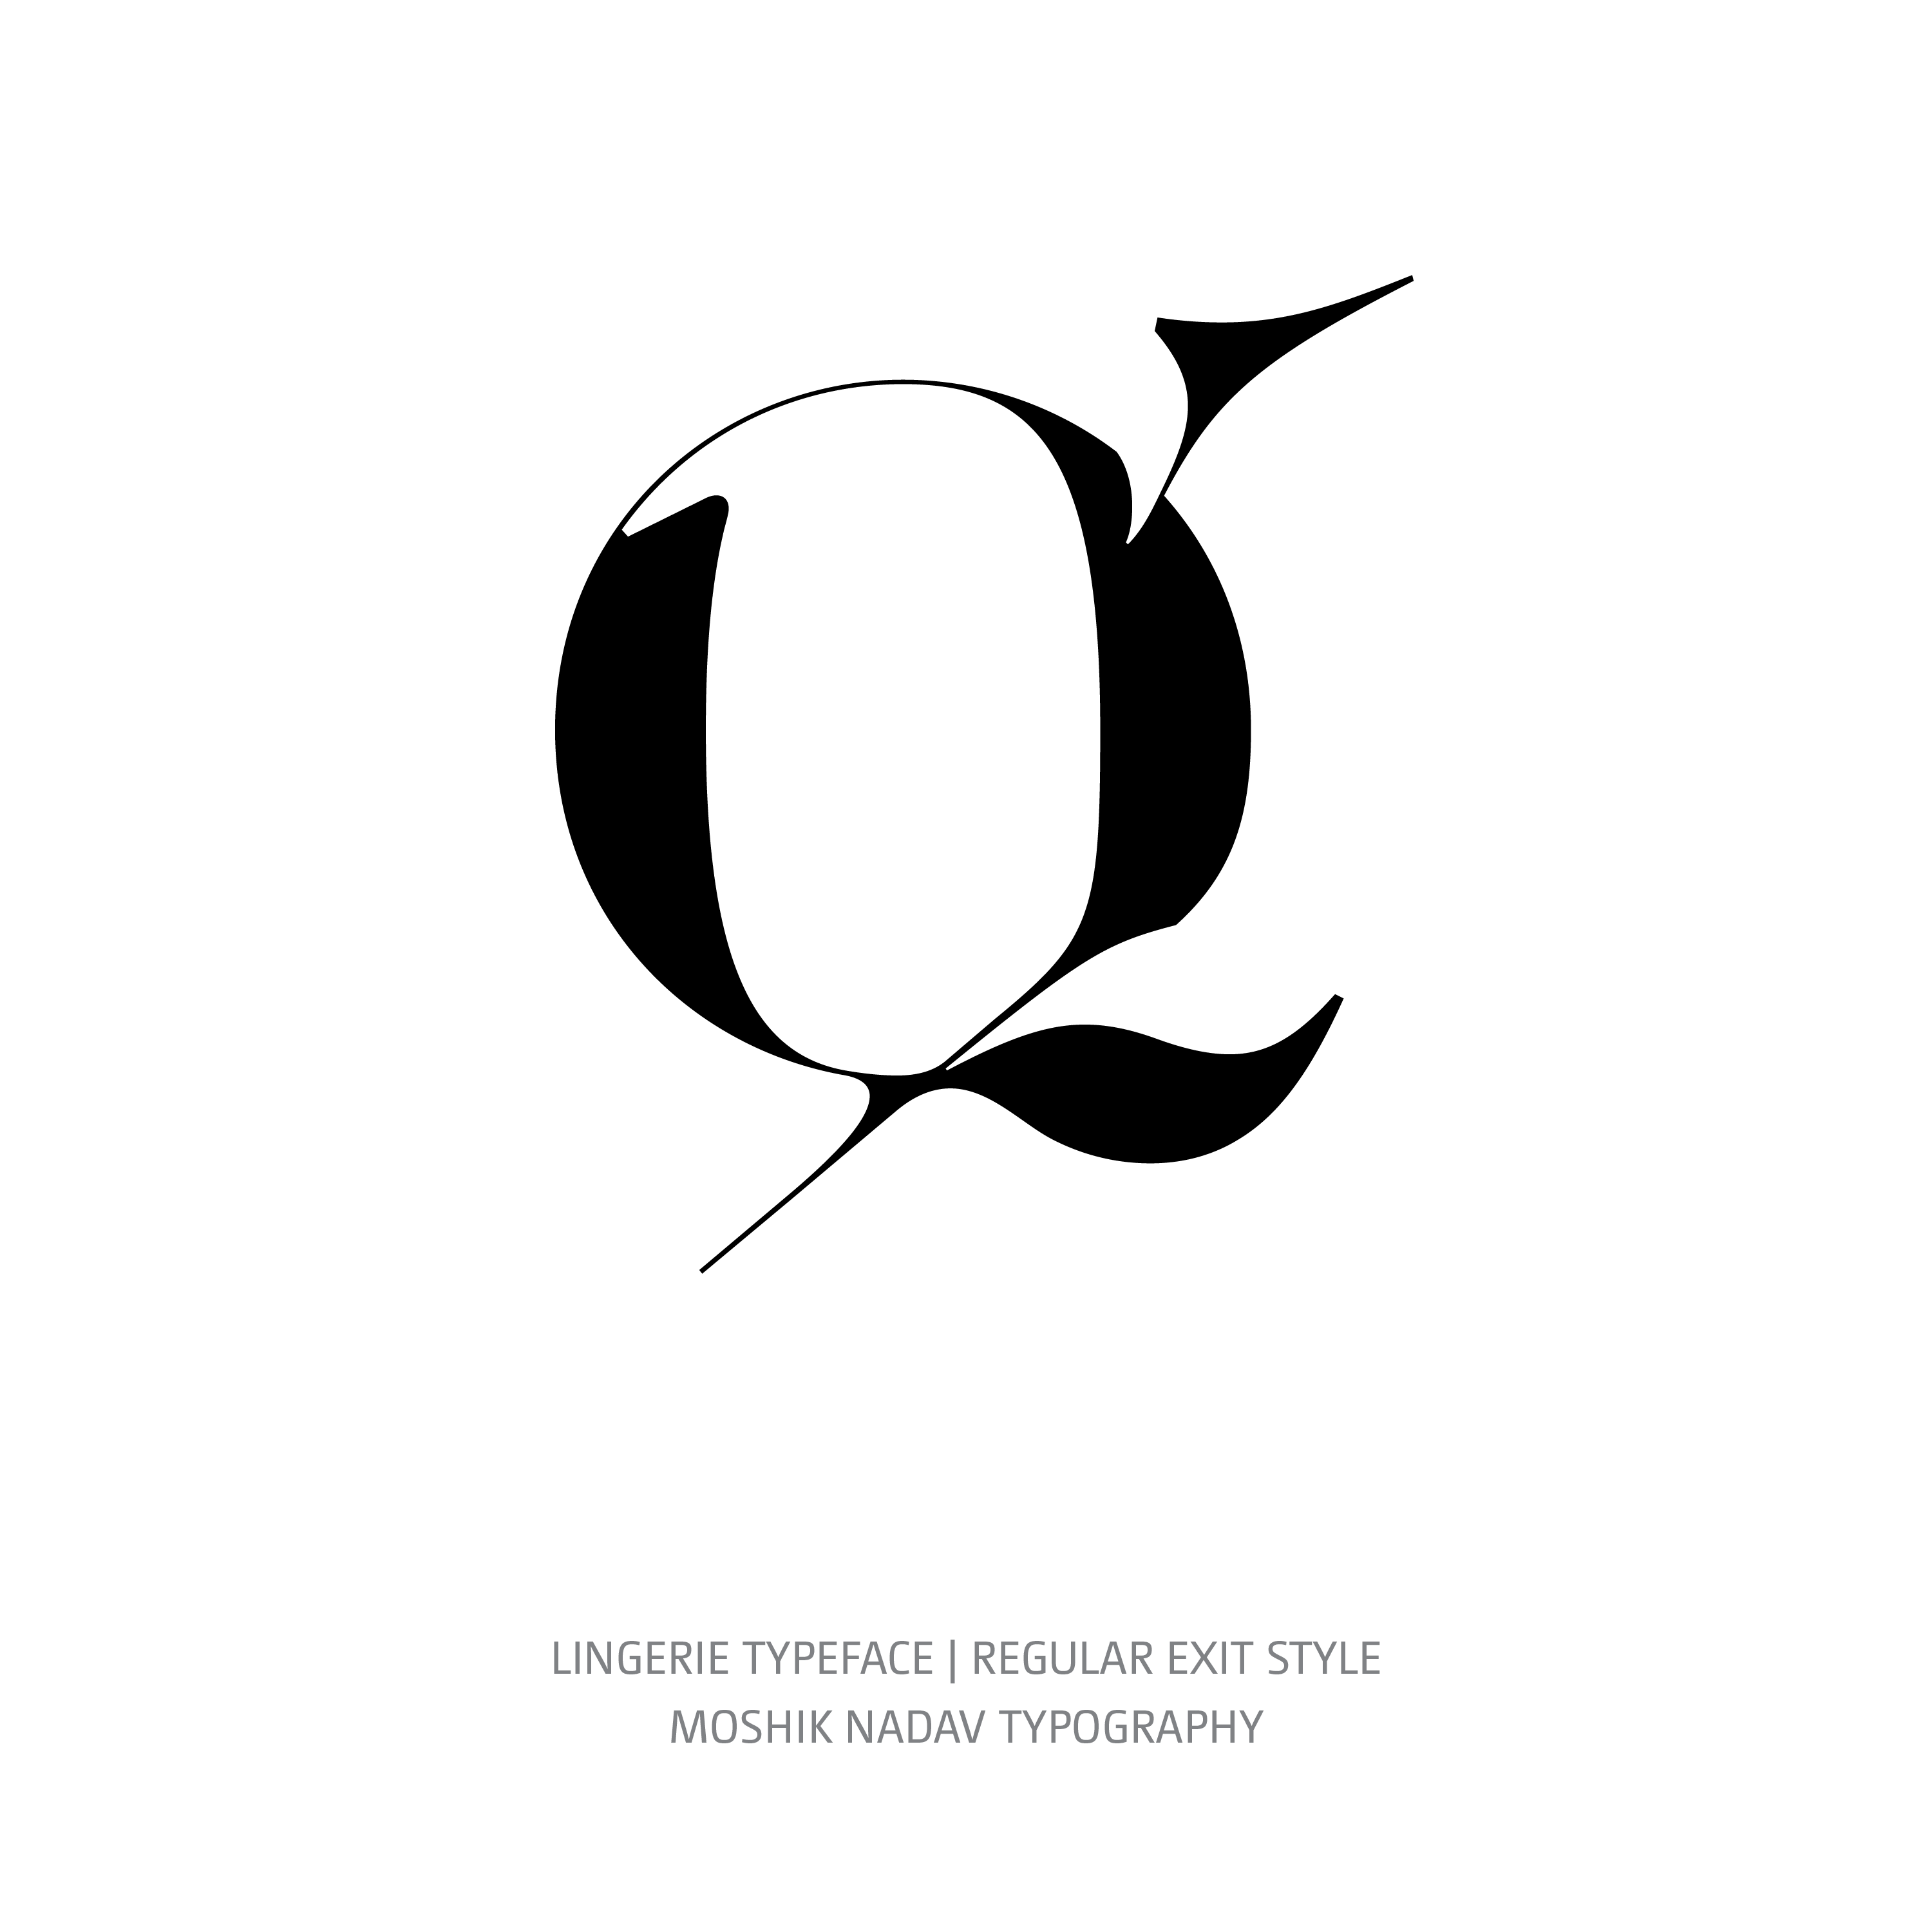 Lingerie Typeface Regular Exit q